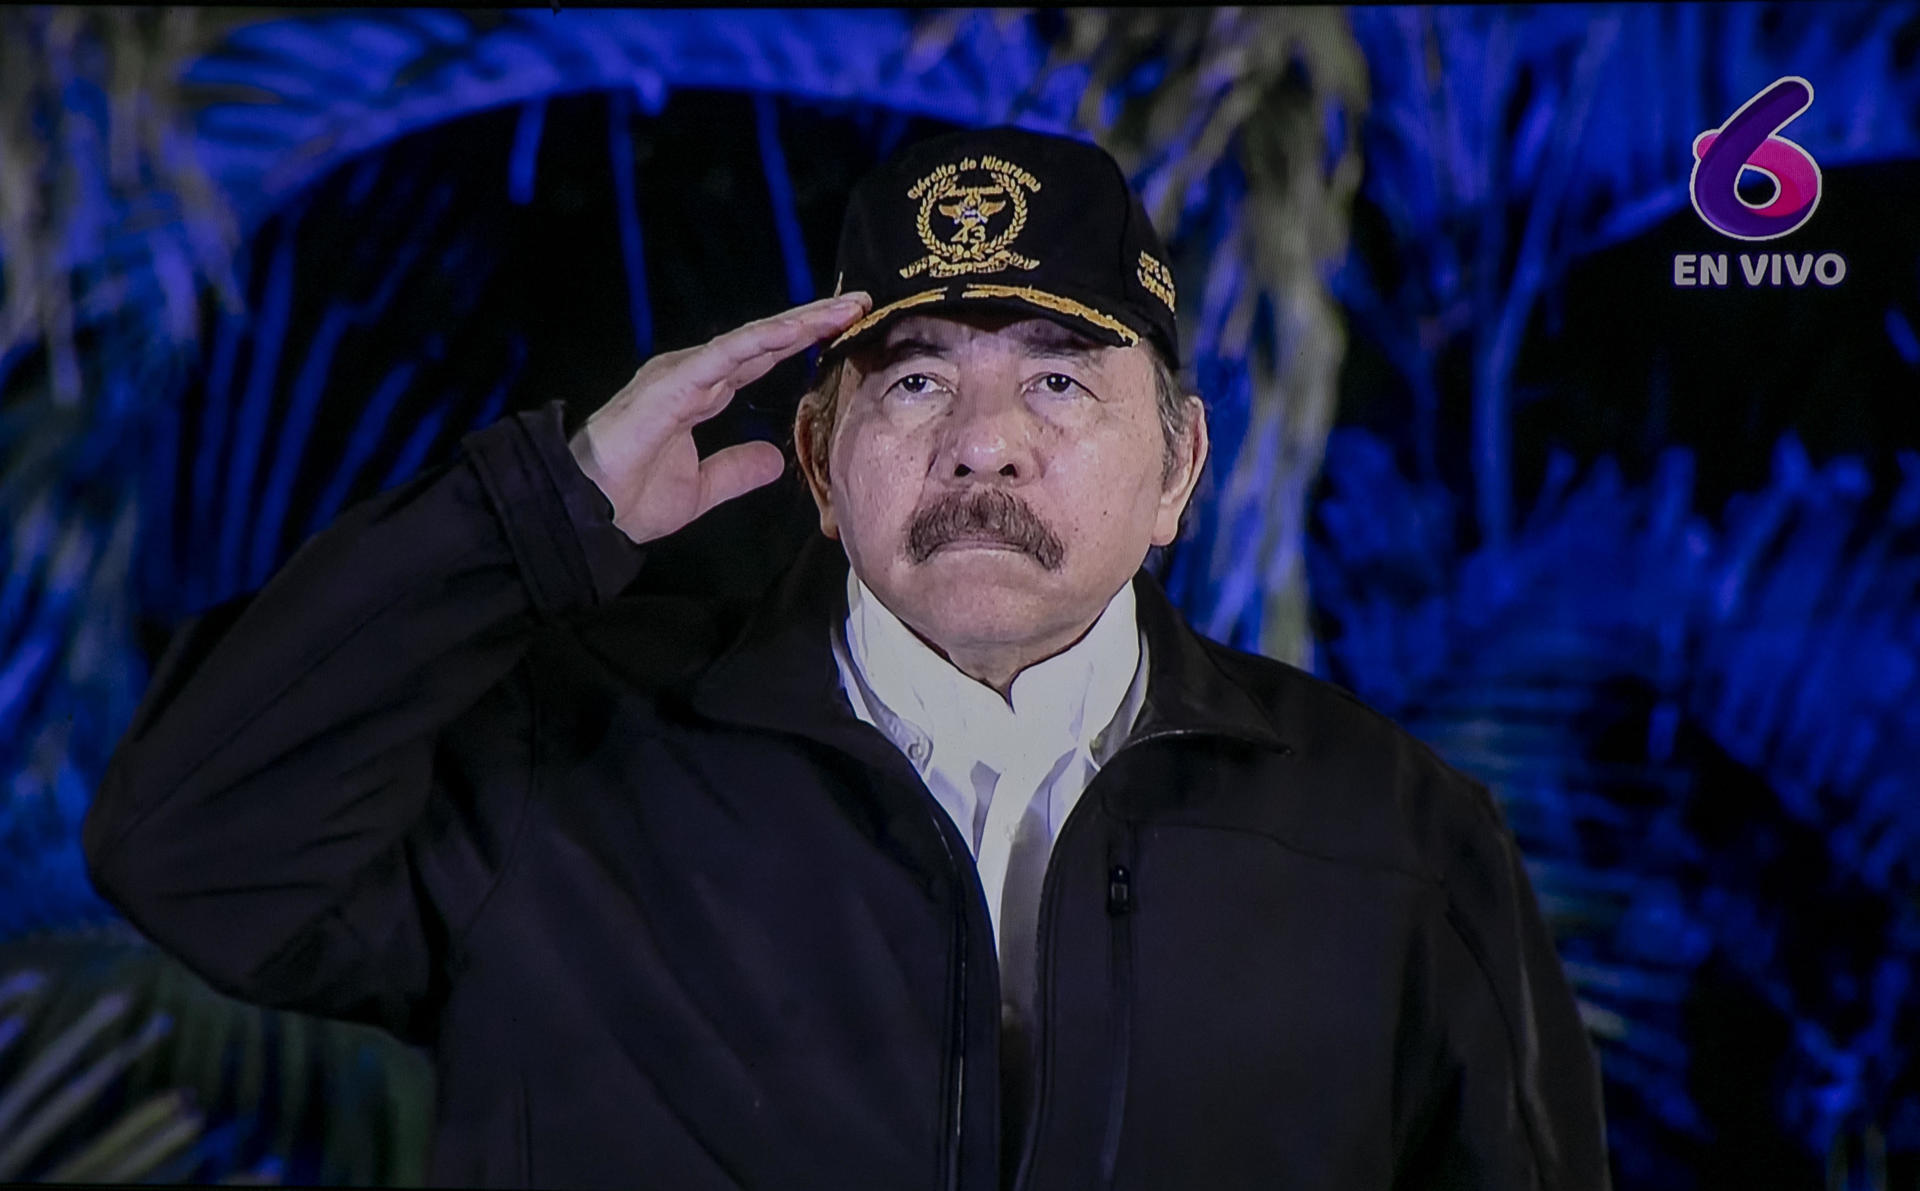 Fotografía de archivo de una captura de una pantalla que muestra al presidente de Nicaragua Daniel Ortega. EFE/Jorge Torres